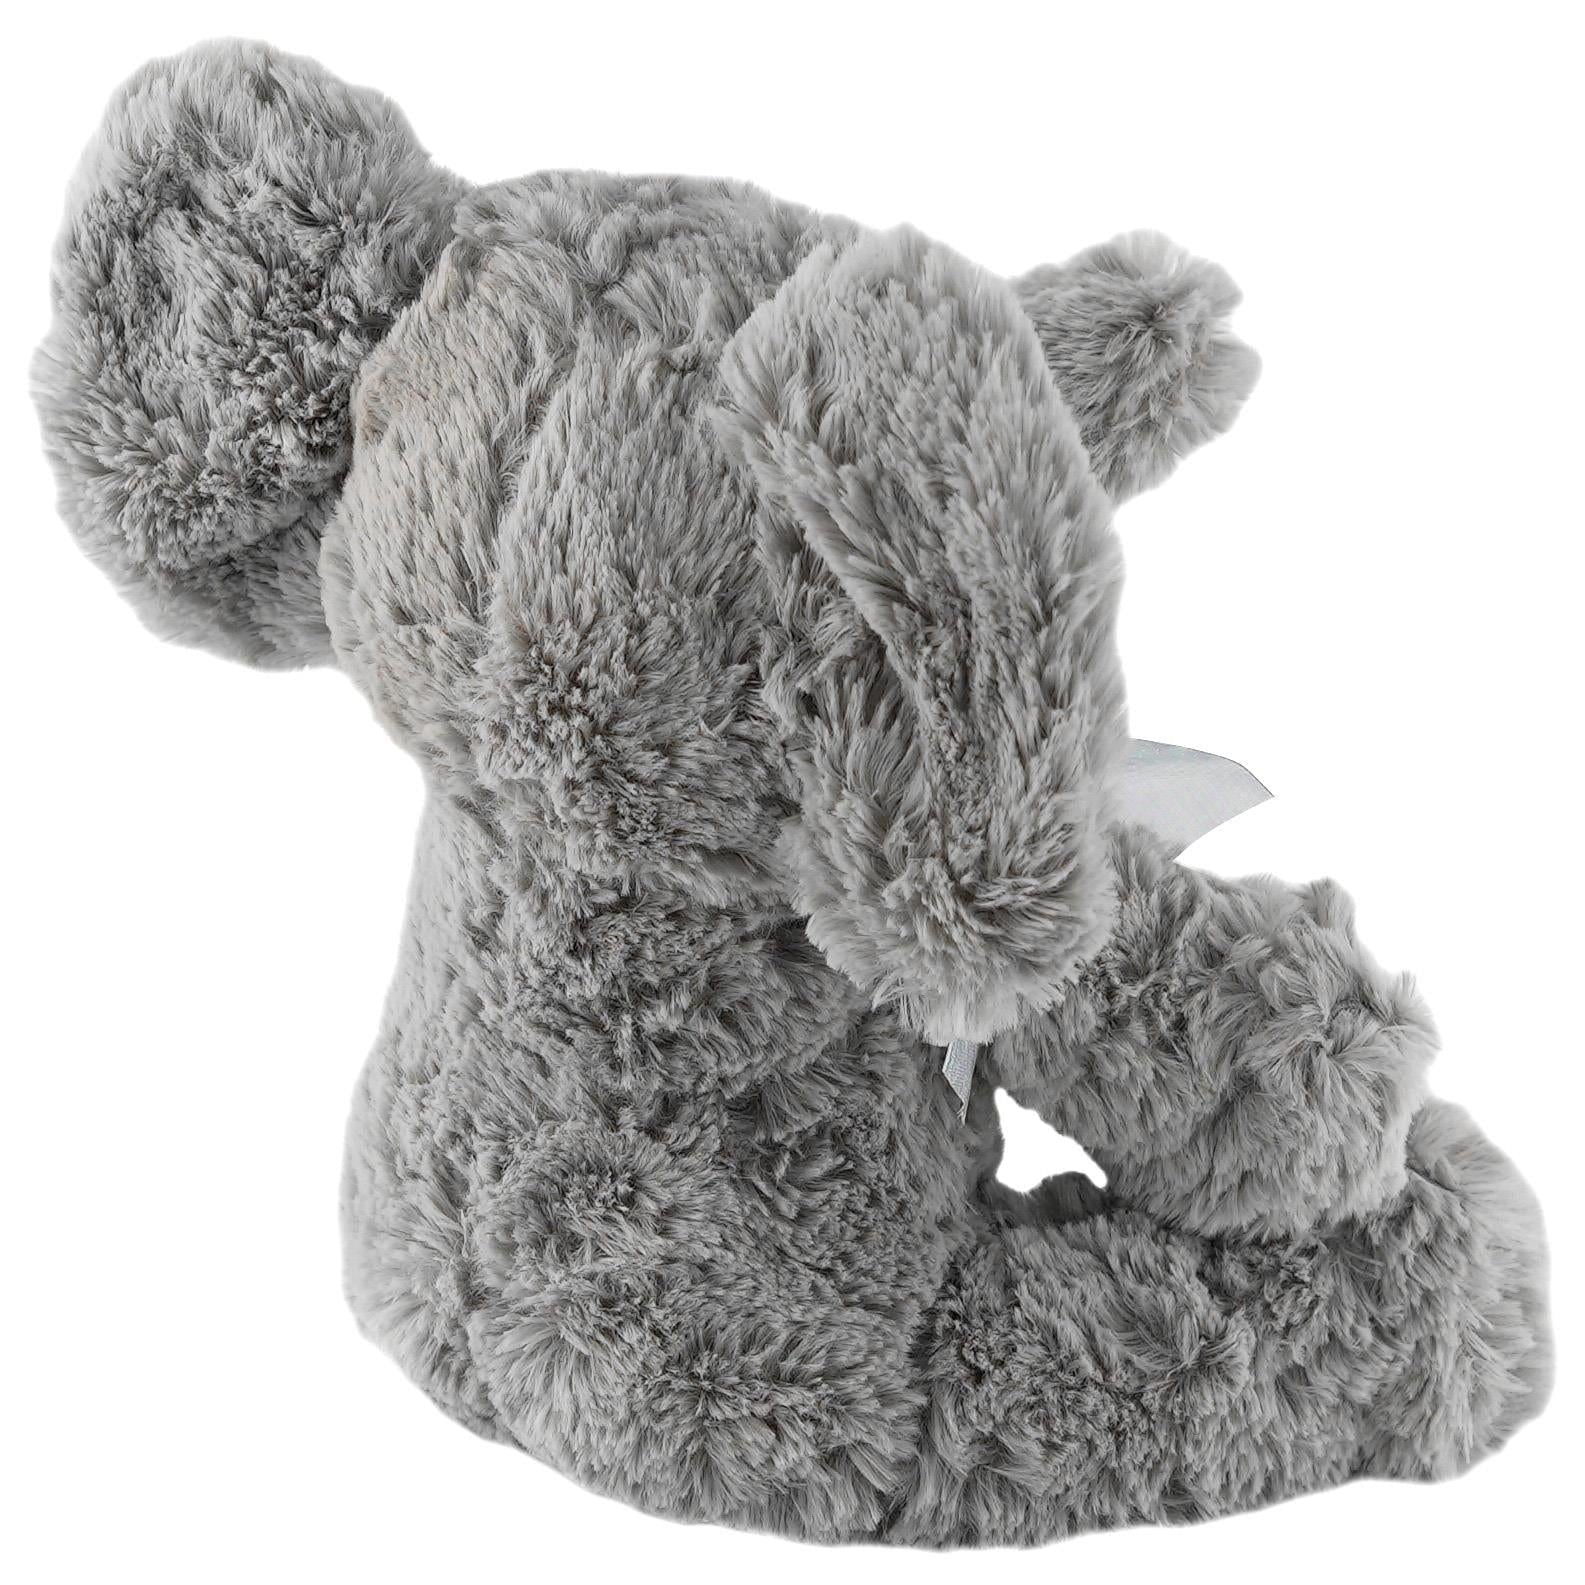 The Magic Toy Shop Plush Toy Grey Plush Elephant Soft Toys